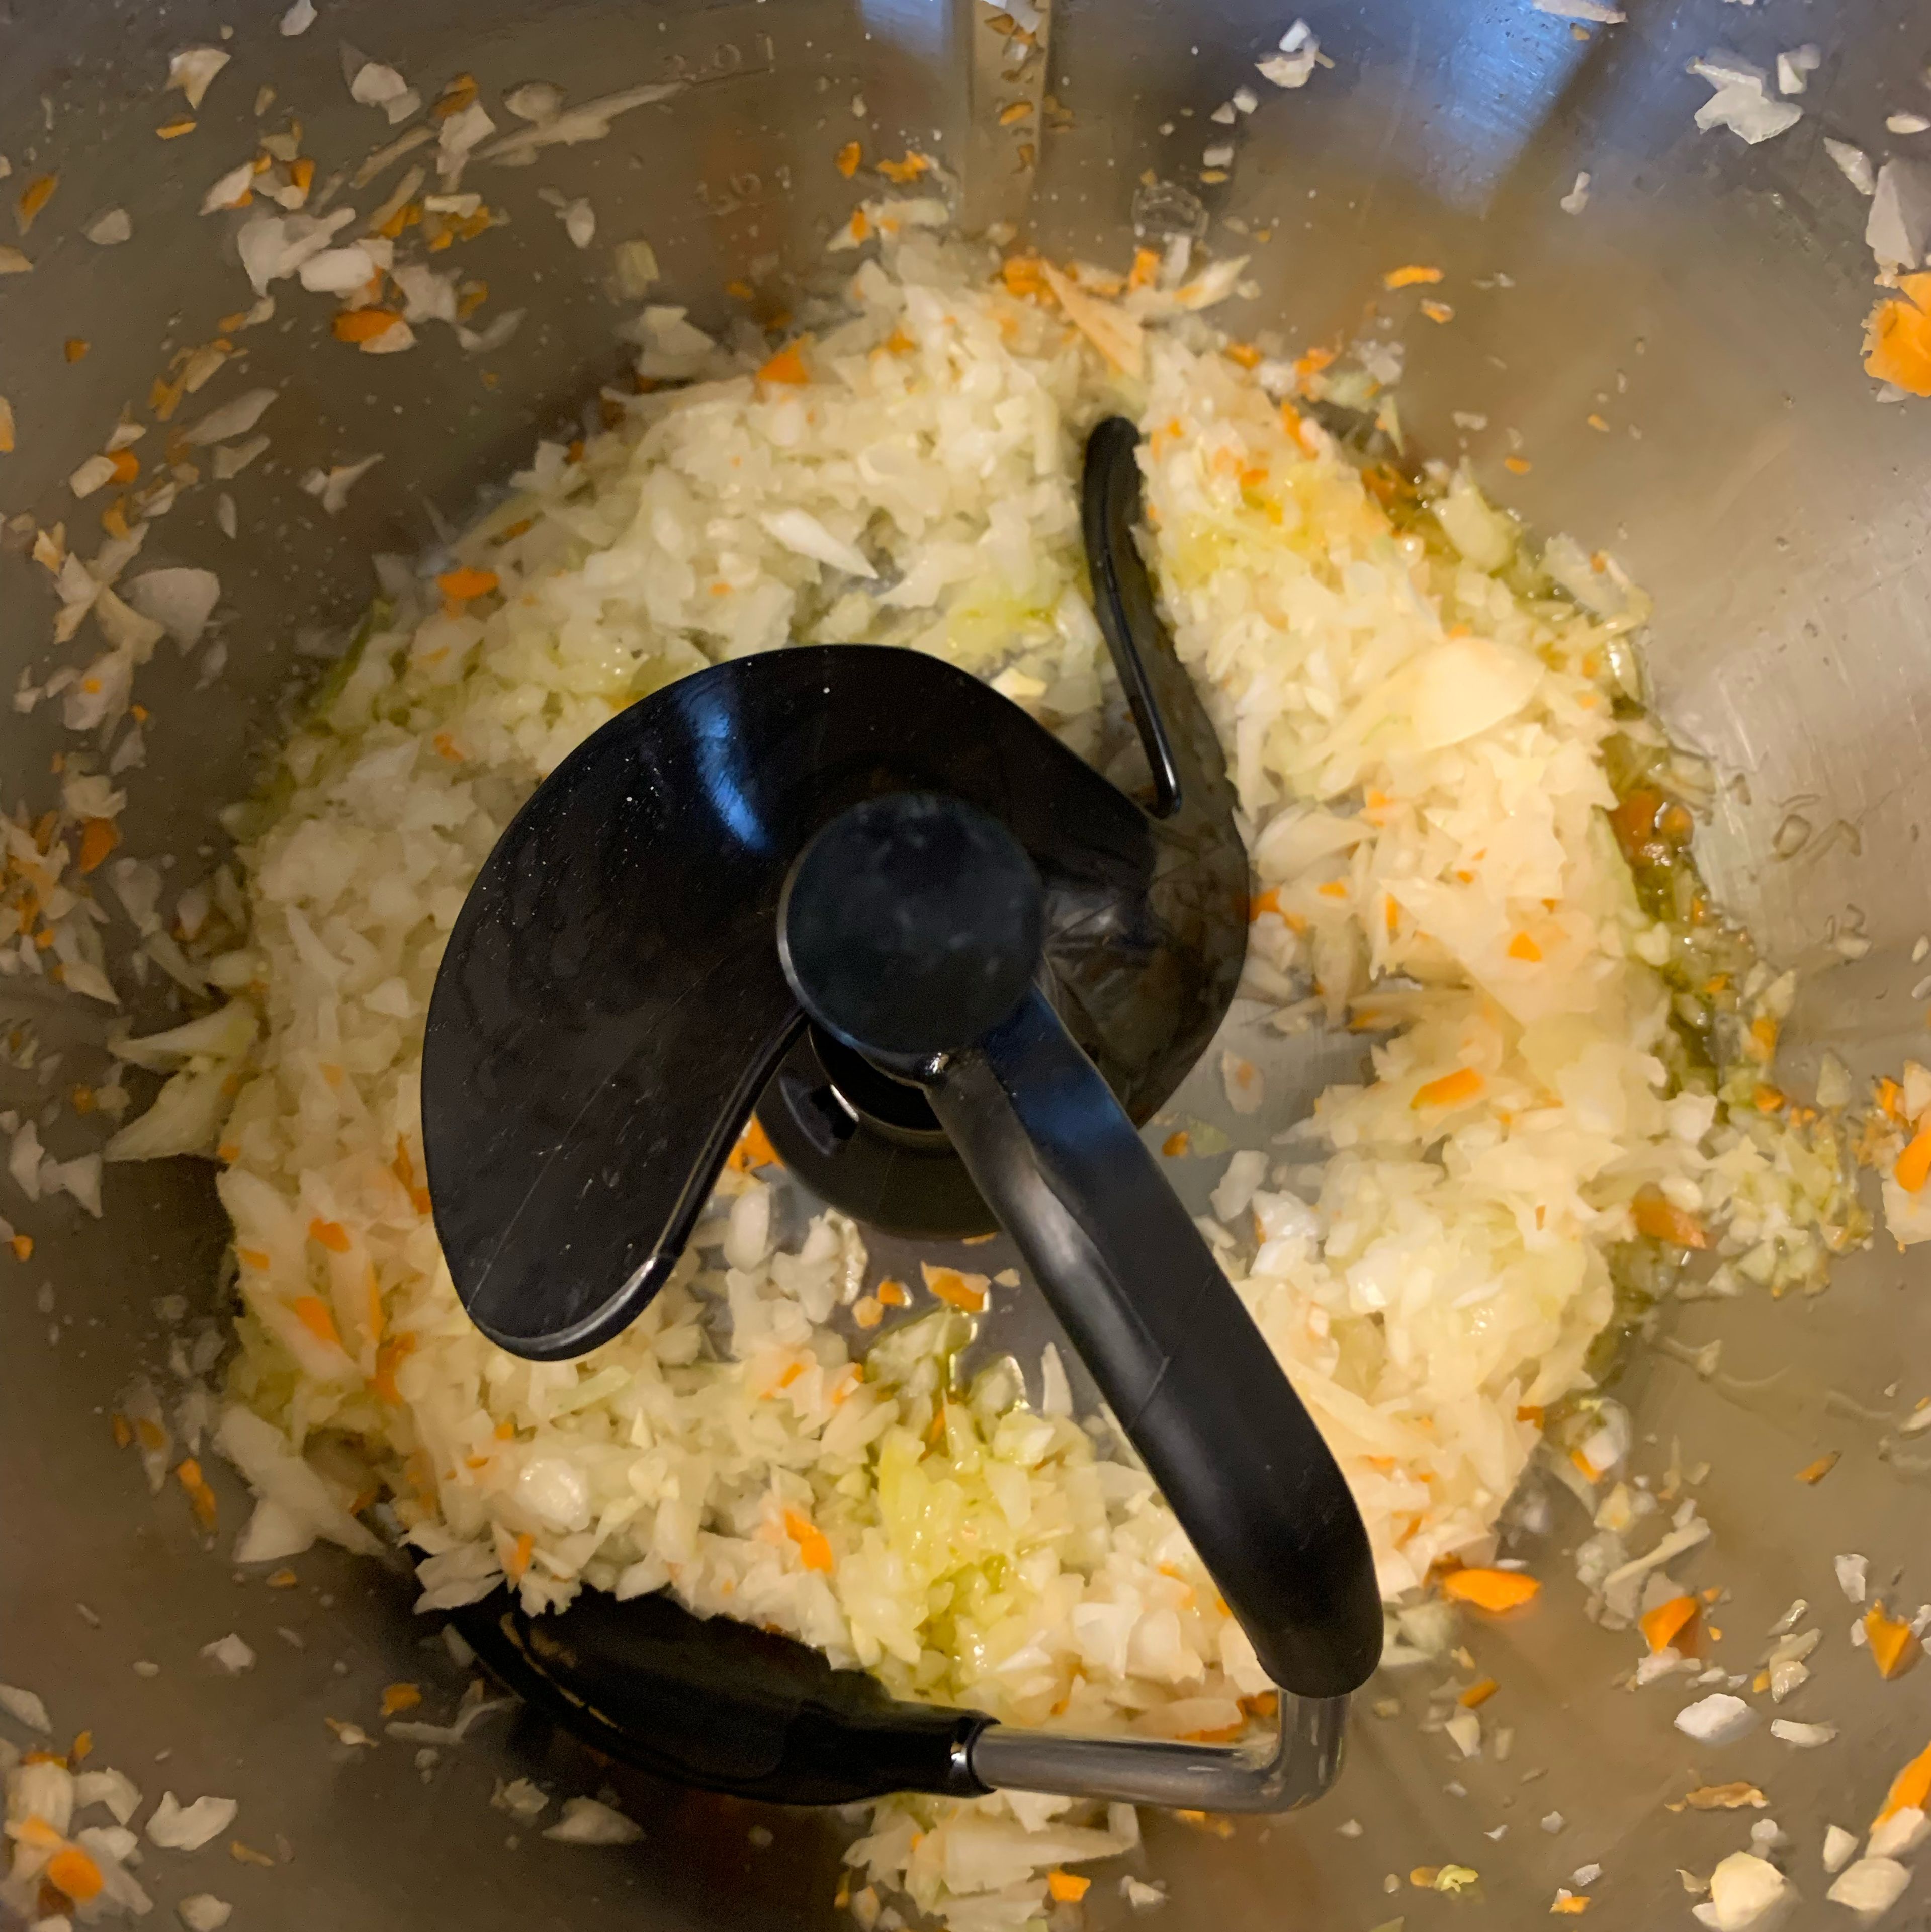 Karotten und Fenchel in eine andere Schüssel umfüllen. Dann die Zwiebel und Knoblauch schälen, den Deckel schließen, den Messerbecher einsetzen und ebenfalls auf Stufe zwölf 15 Sekunden lang häckseln (Universalmesser | Stufe 12 | 15 Sek.). Universalmesser entnehmen und 3D-Rührer einsetzten und mit Olivenöl 120° circa 5 Minuten anbraten ohne Messbecher (3D-Rührer | 120°C | 5 Min.). Anschließend zu den anderen Zutaten in die Schüssel umfüllen.